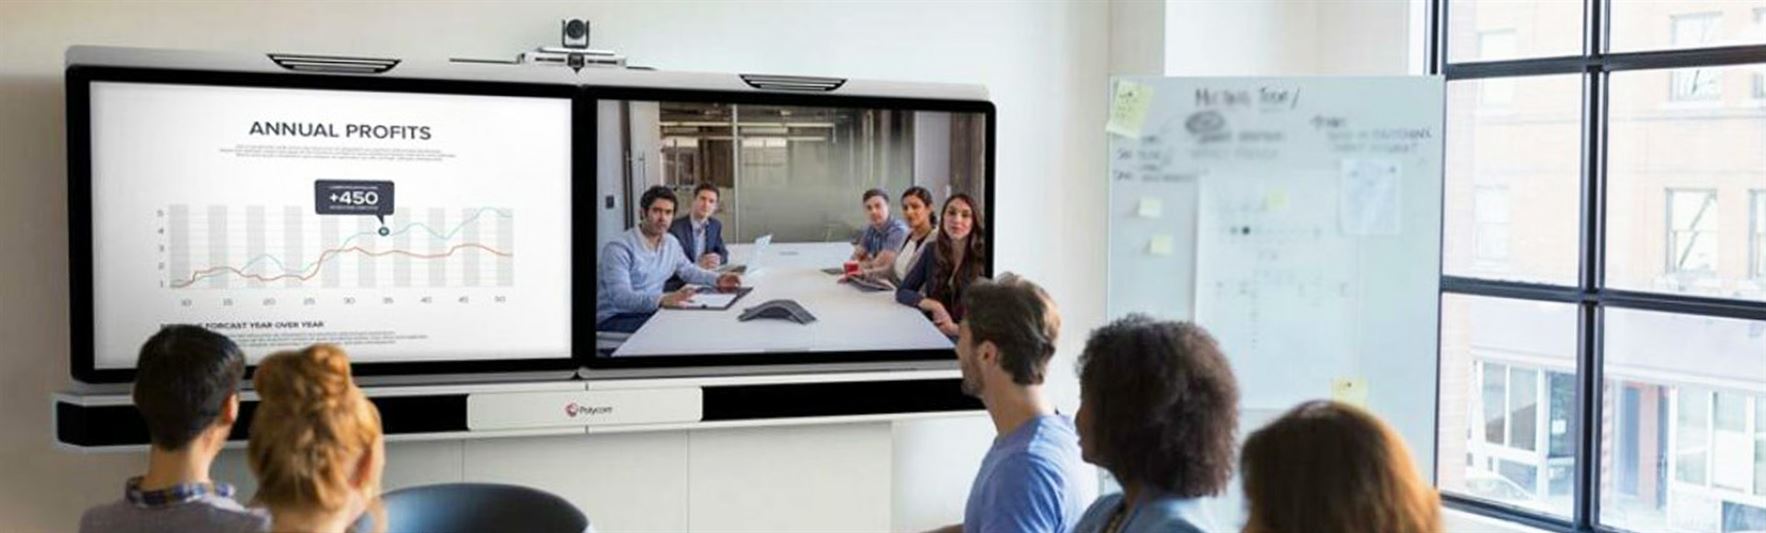 Progetta la tua sala per videoconferenze: rimani operativo con Covid-19